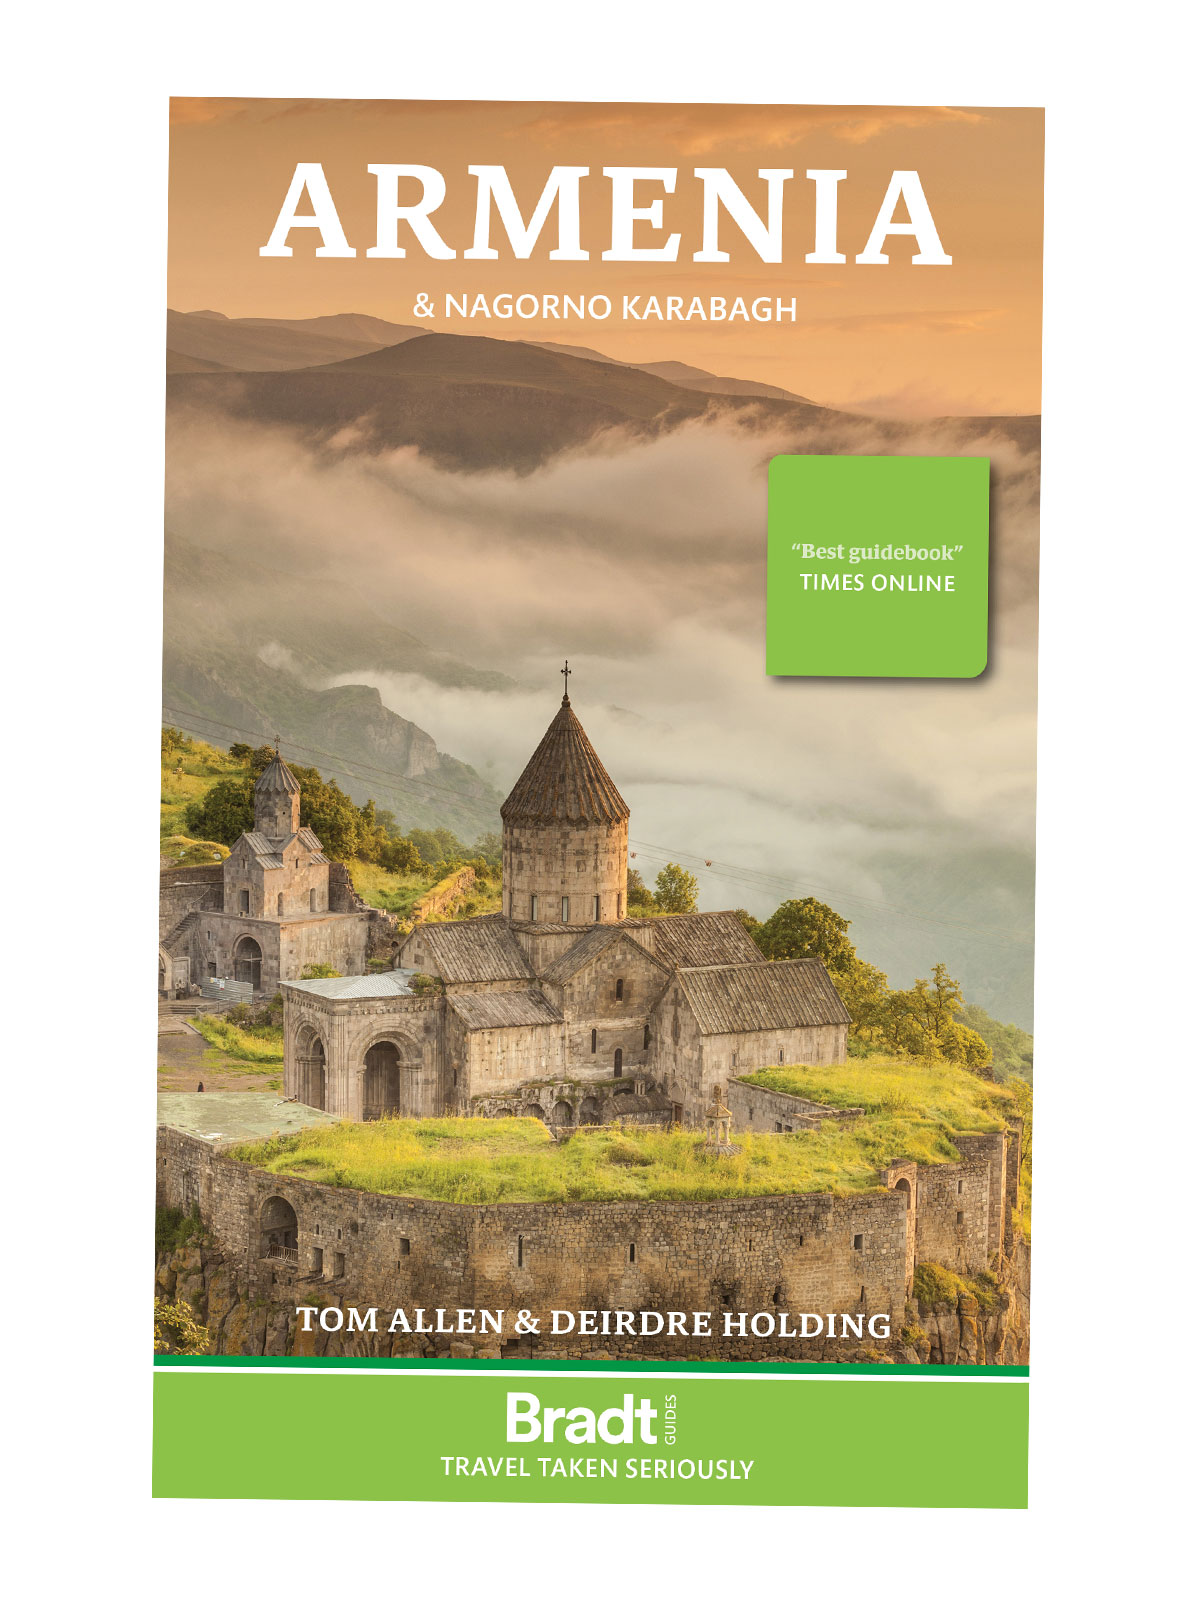 Armenia reiseguide